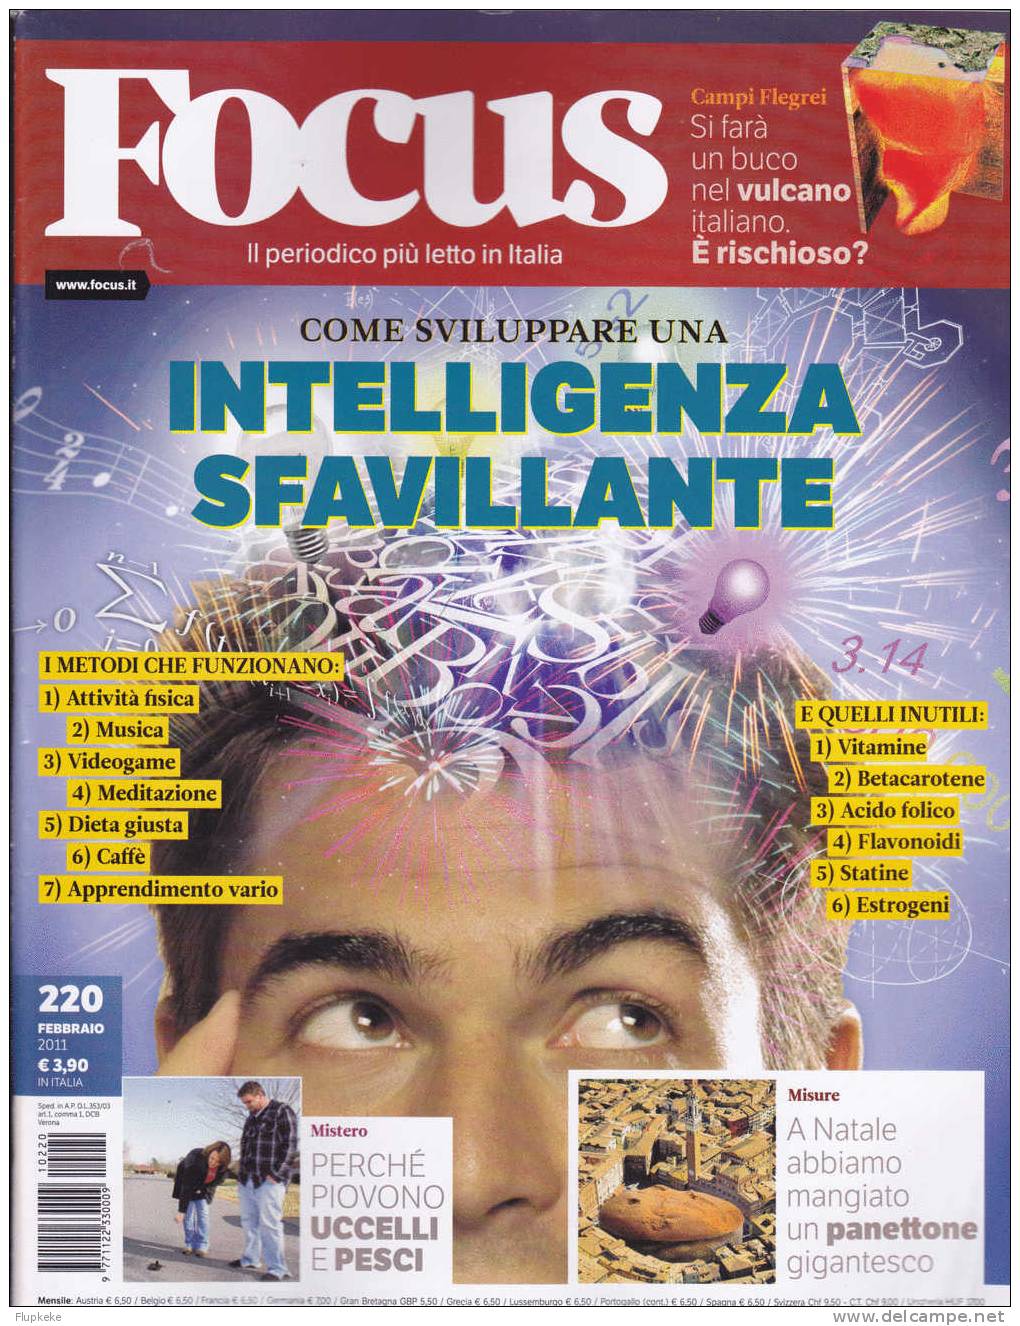 Focus 220 Februaio 2011 Come Sviluppare Una Intelligenza Sfavillante - Scientific Texts